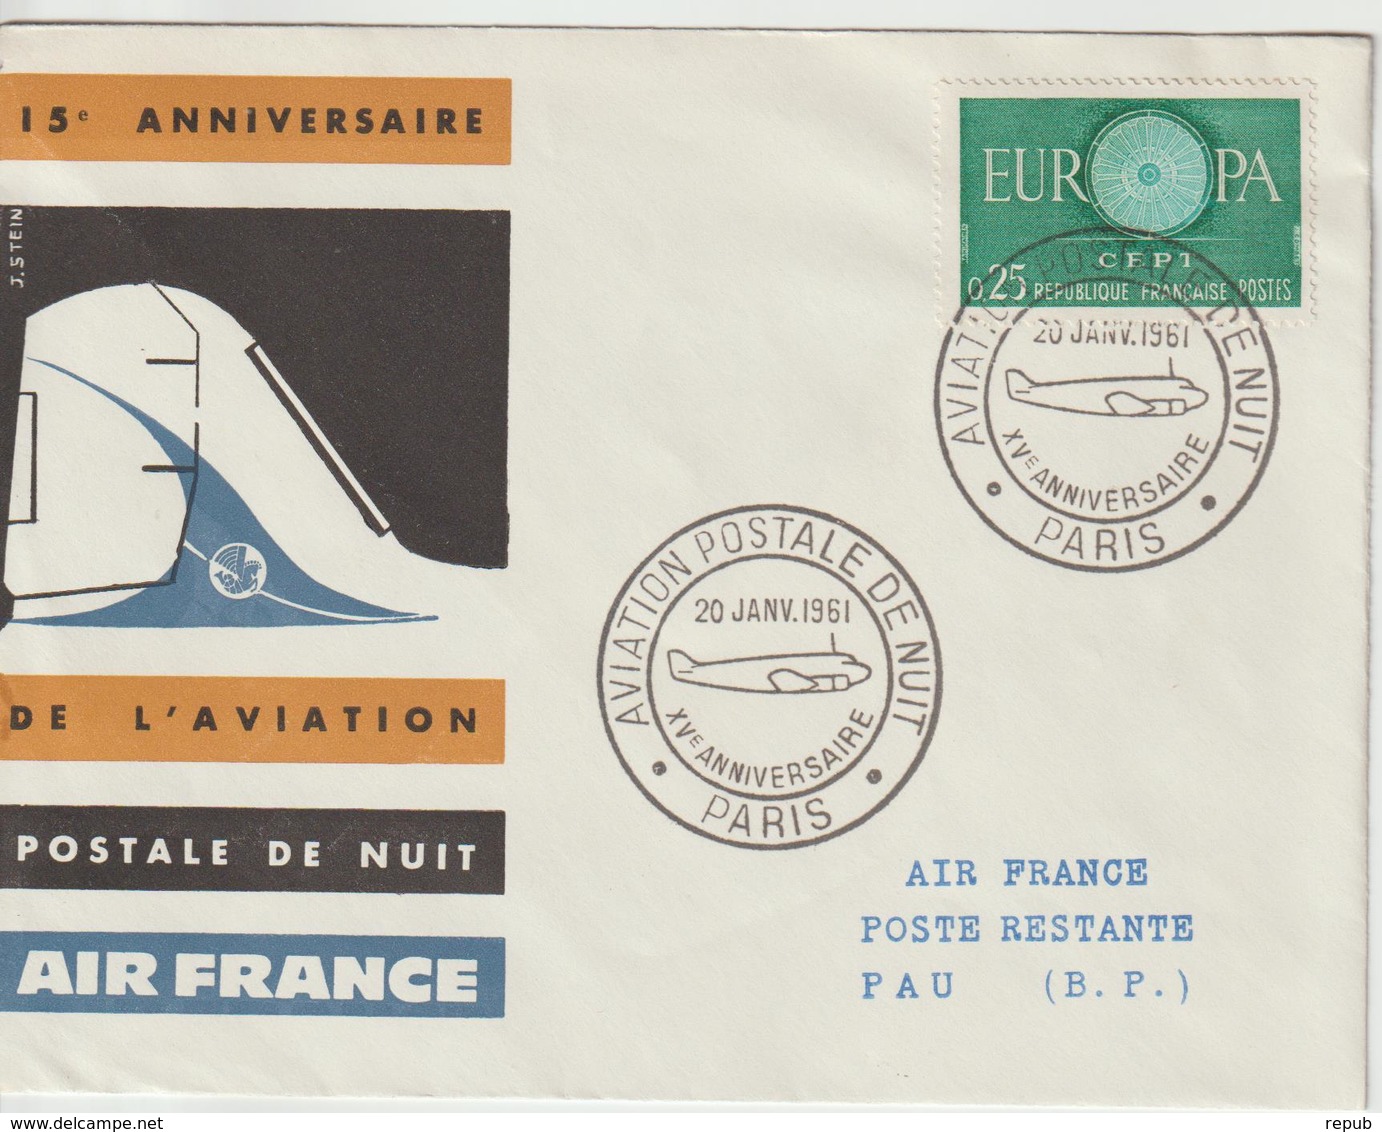 France 1961 15ème Anniversaire Postale De Nuit - Erst- U. Sonderflugbriefe